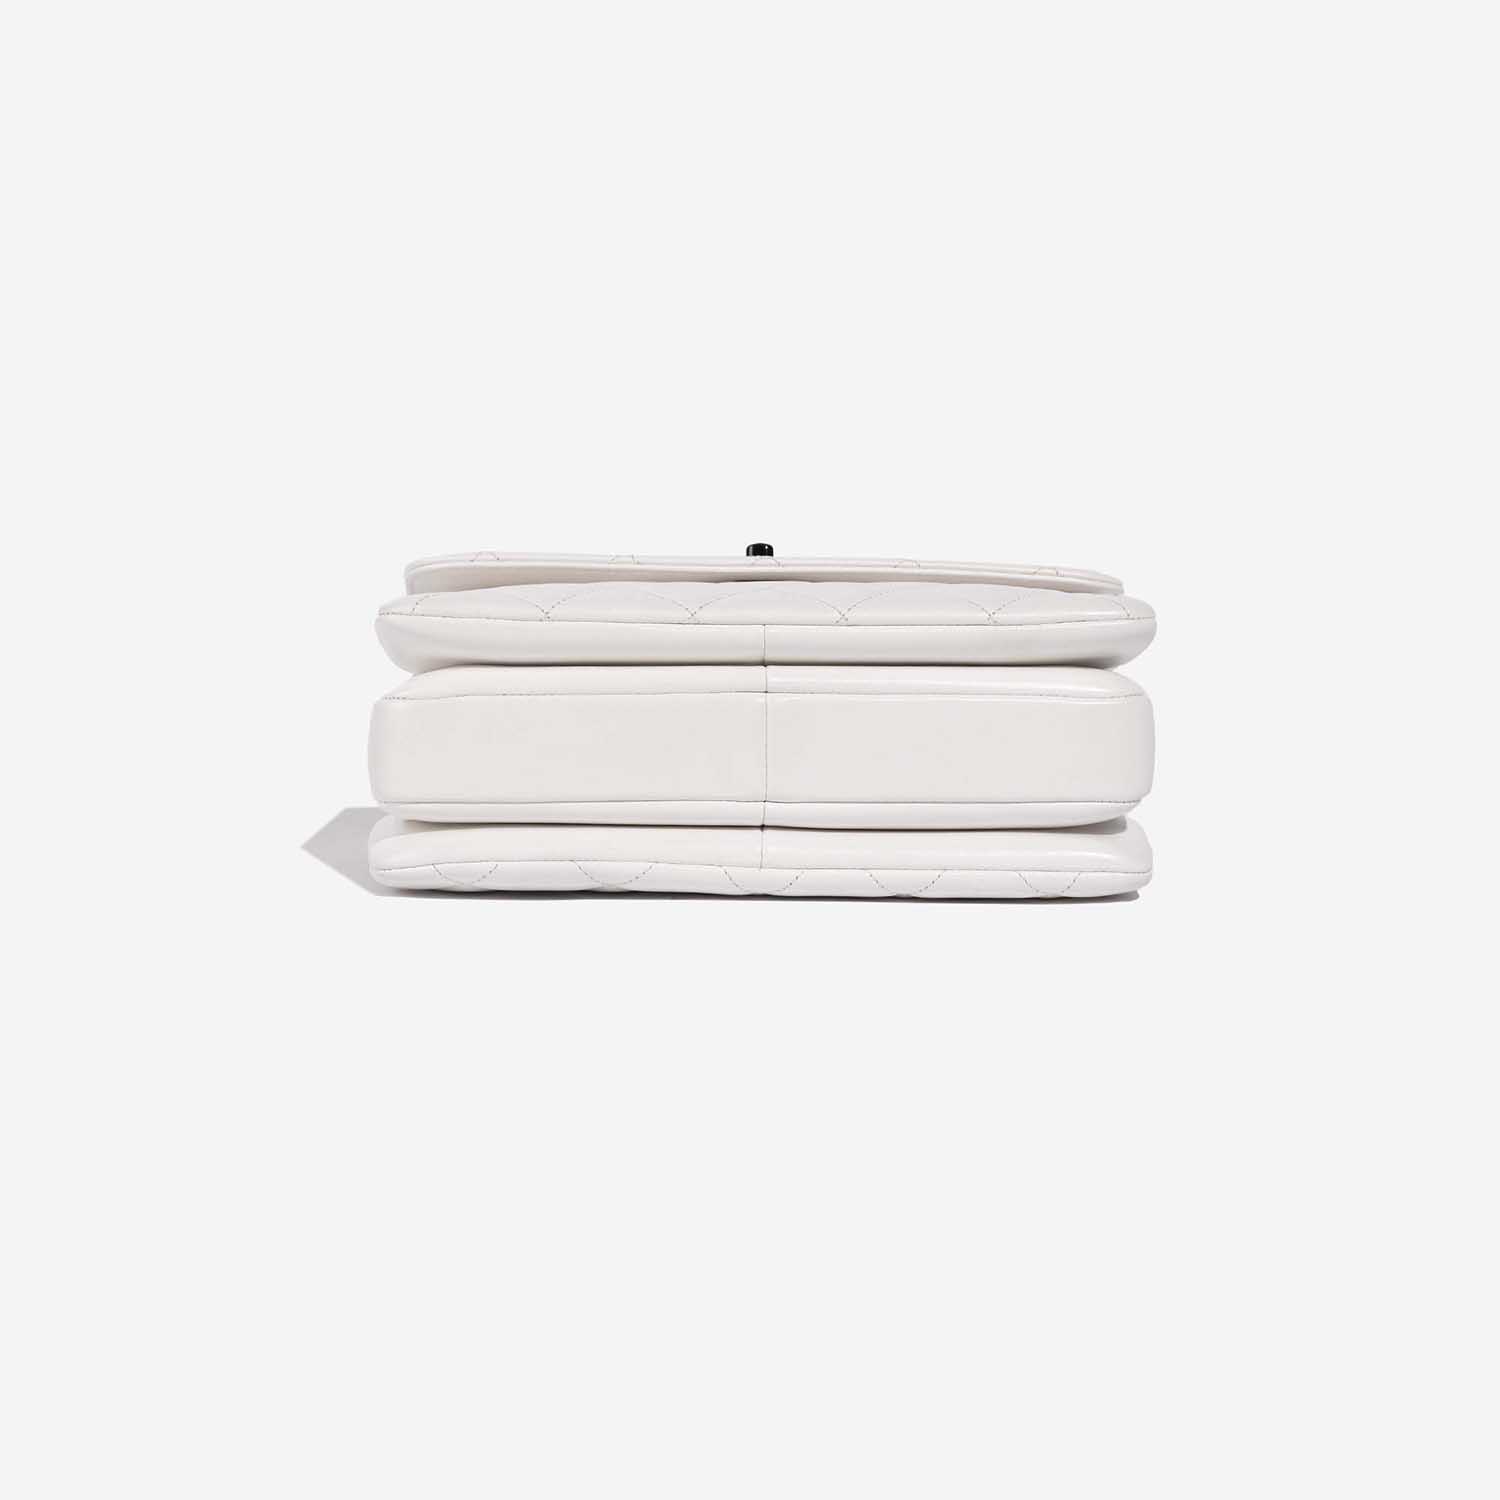 Chanel TimelessHandle Small White Bottom | Verkaufen Sie Ihre Designer-Tasche auf Saclab.com